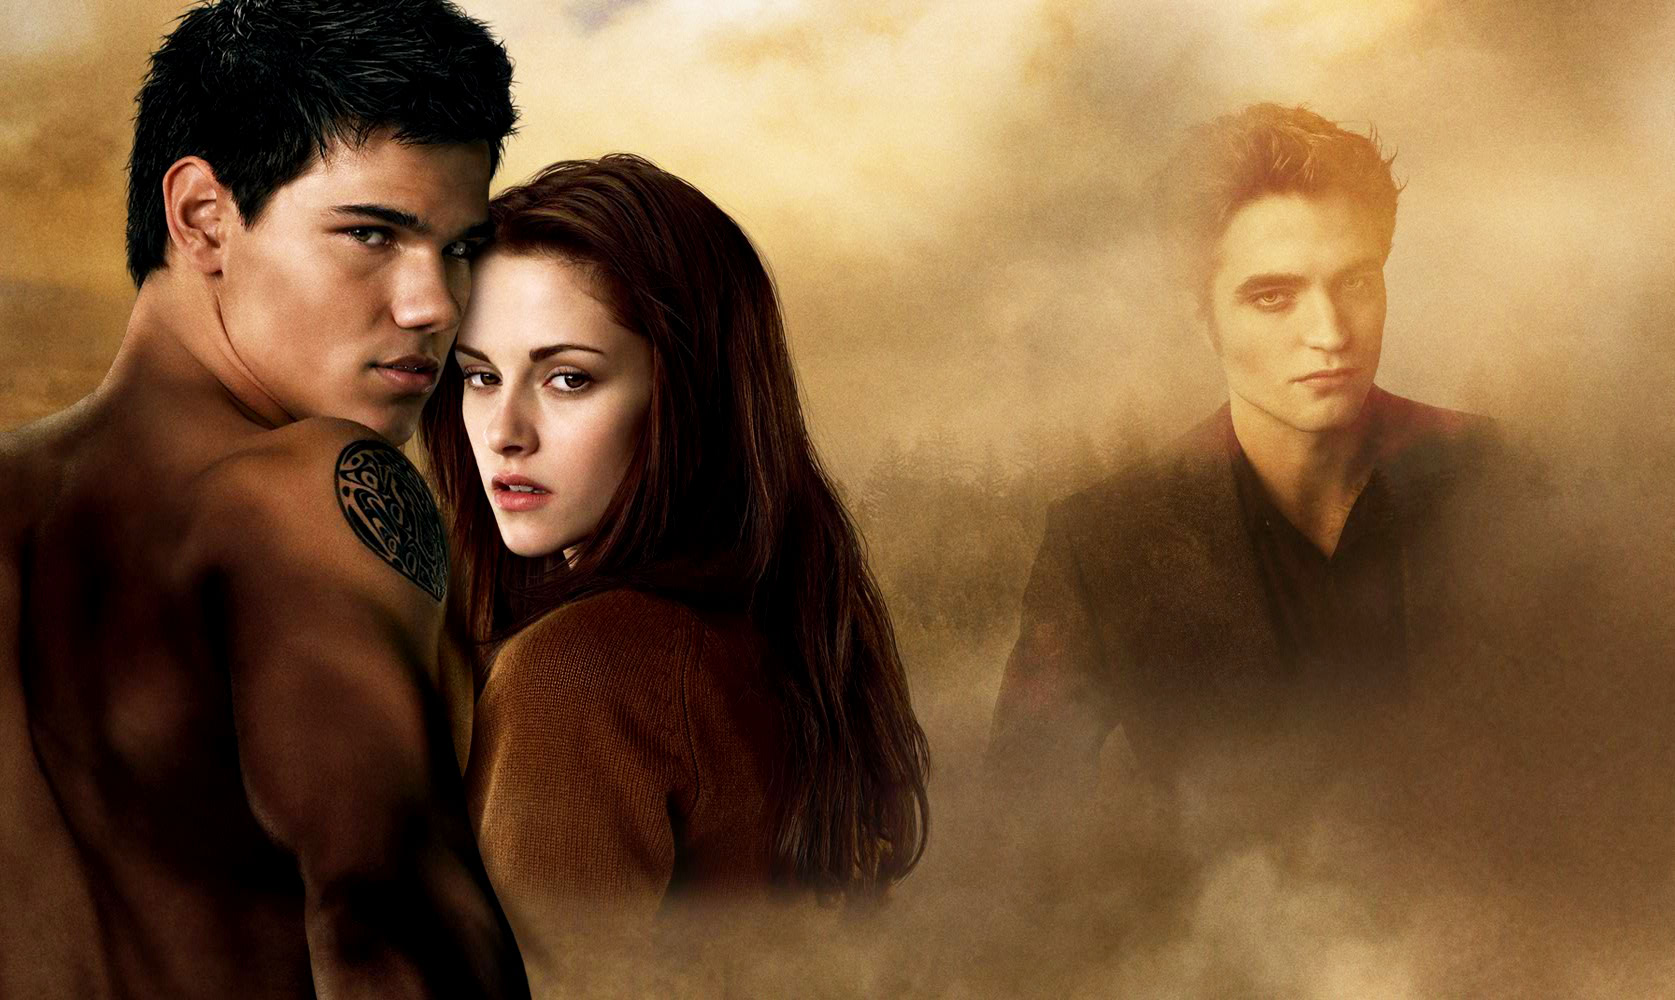 Taylor Lautner, Kristen Stewart and Robert Pattinson in Summit Entertainment's The Twilight Saga's New Moon (2009)